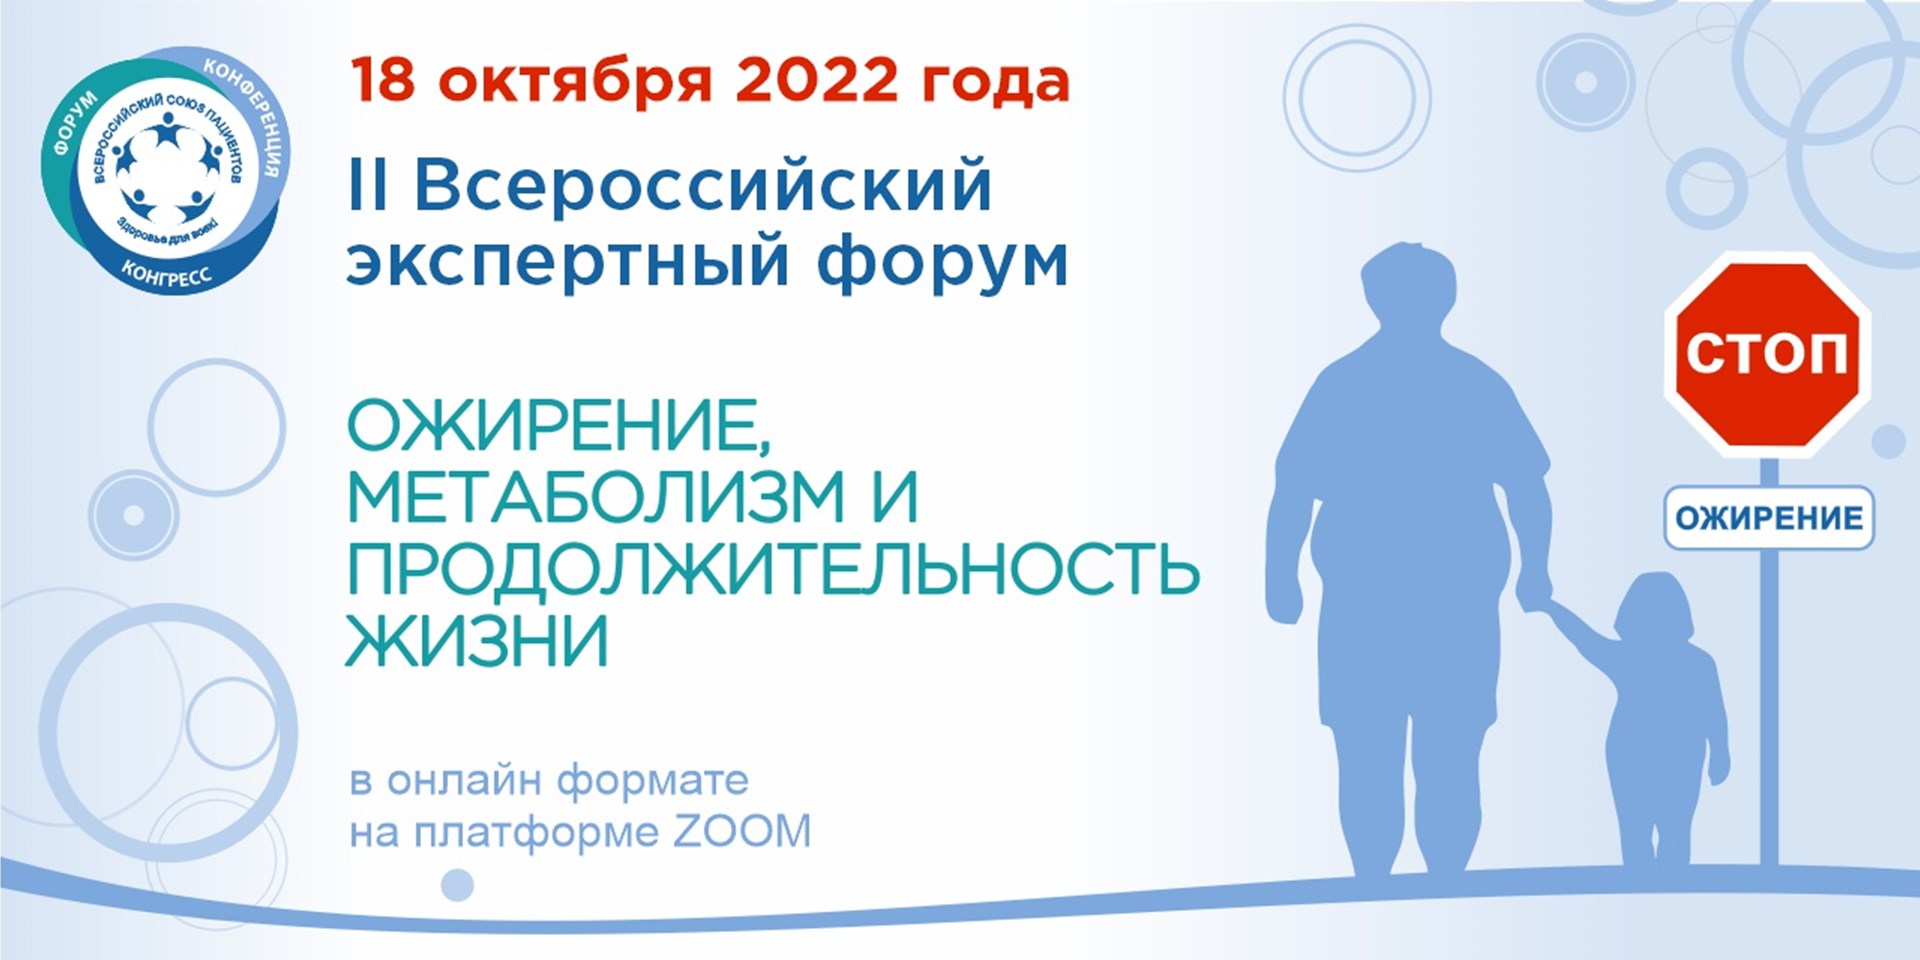 18.10.2022 II Всероссийский экспертный форум «Ожирение, метаболизм и продолжительность жизни». Главные заявления